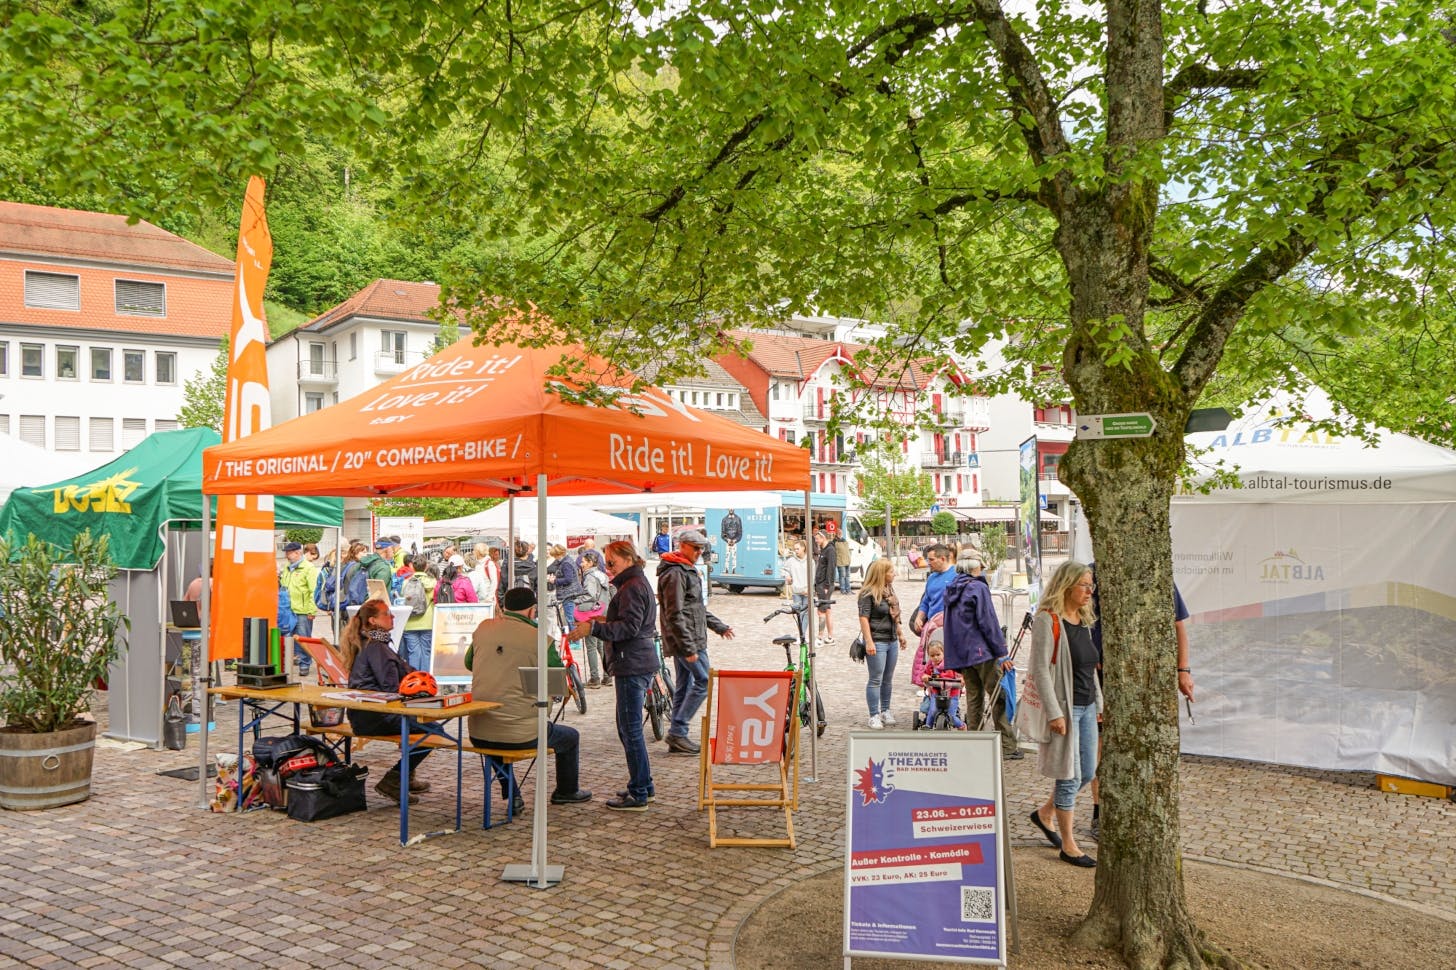 Auf der 2. Herrenalber Outdoor-Messe präsentieren am 4. und 5. Mai Aussteller Wellness-, Sport- und Tourismusangebote sowie die neuesten Outdoor-Trends auf dem Rathausplatz.